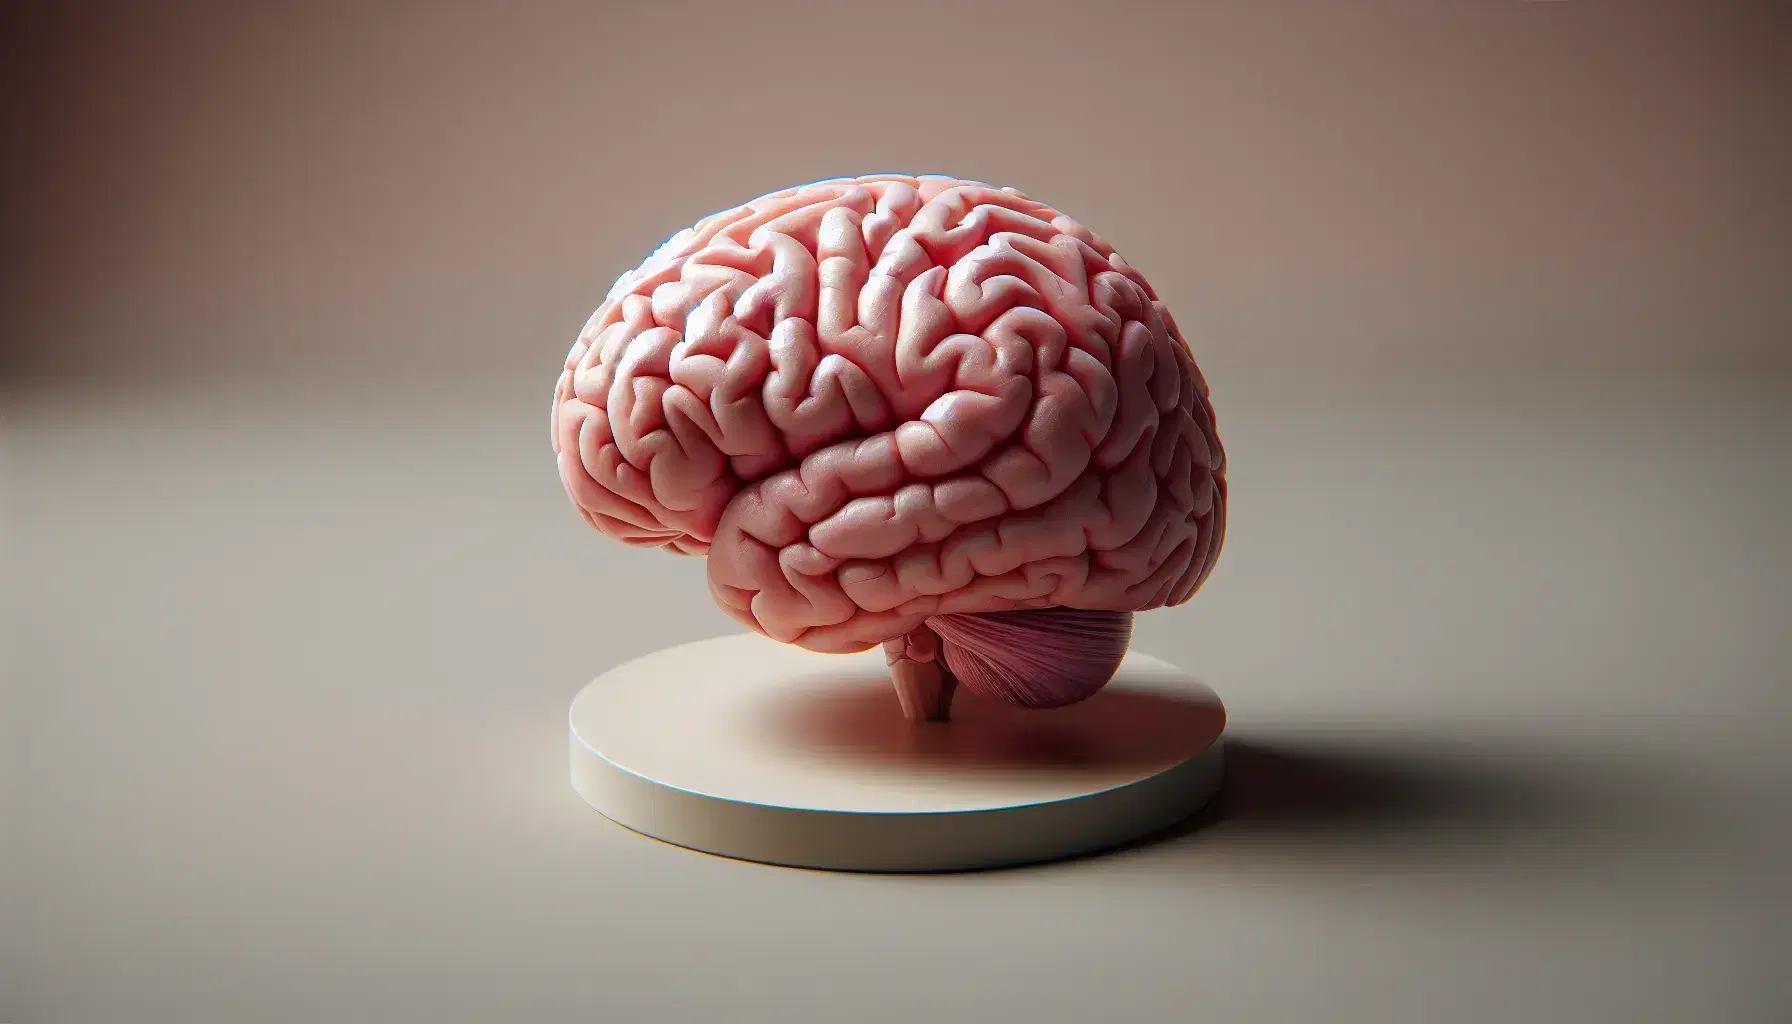 Cerebro humano detallado en tonos rosados y rojizos sobre superficie lisa, destacando sus surcos y giros anatómicos con iluminación suave.